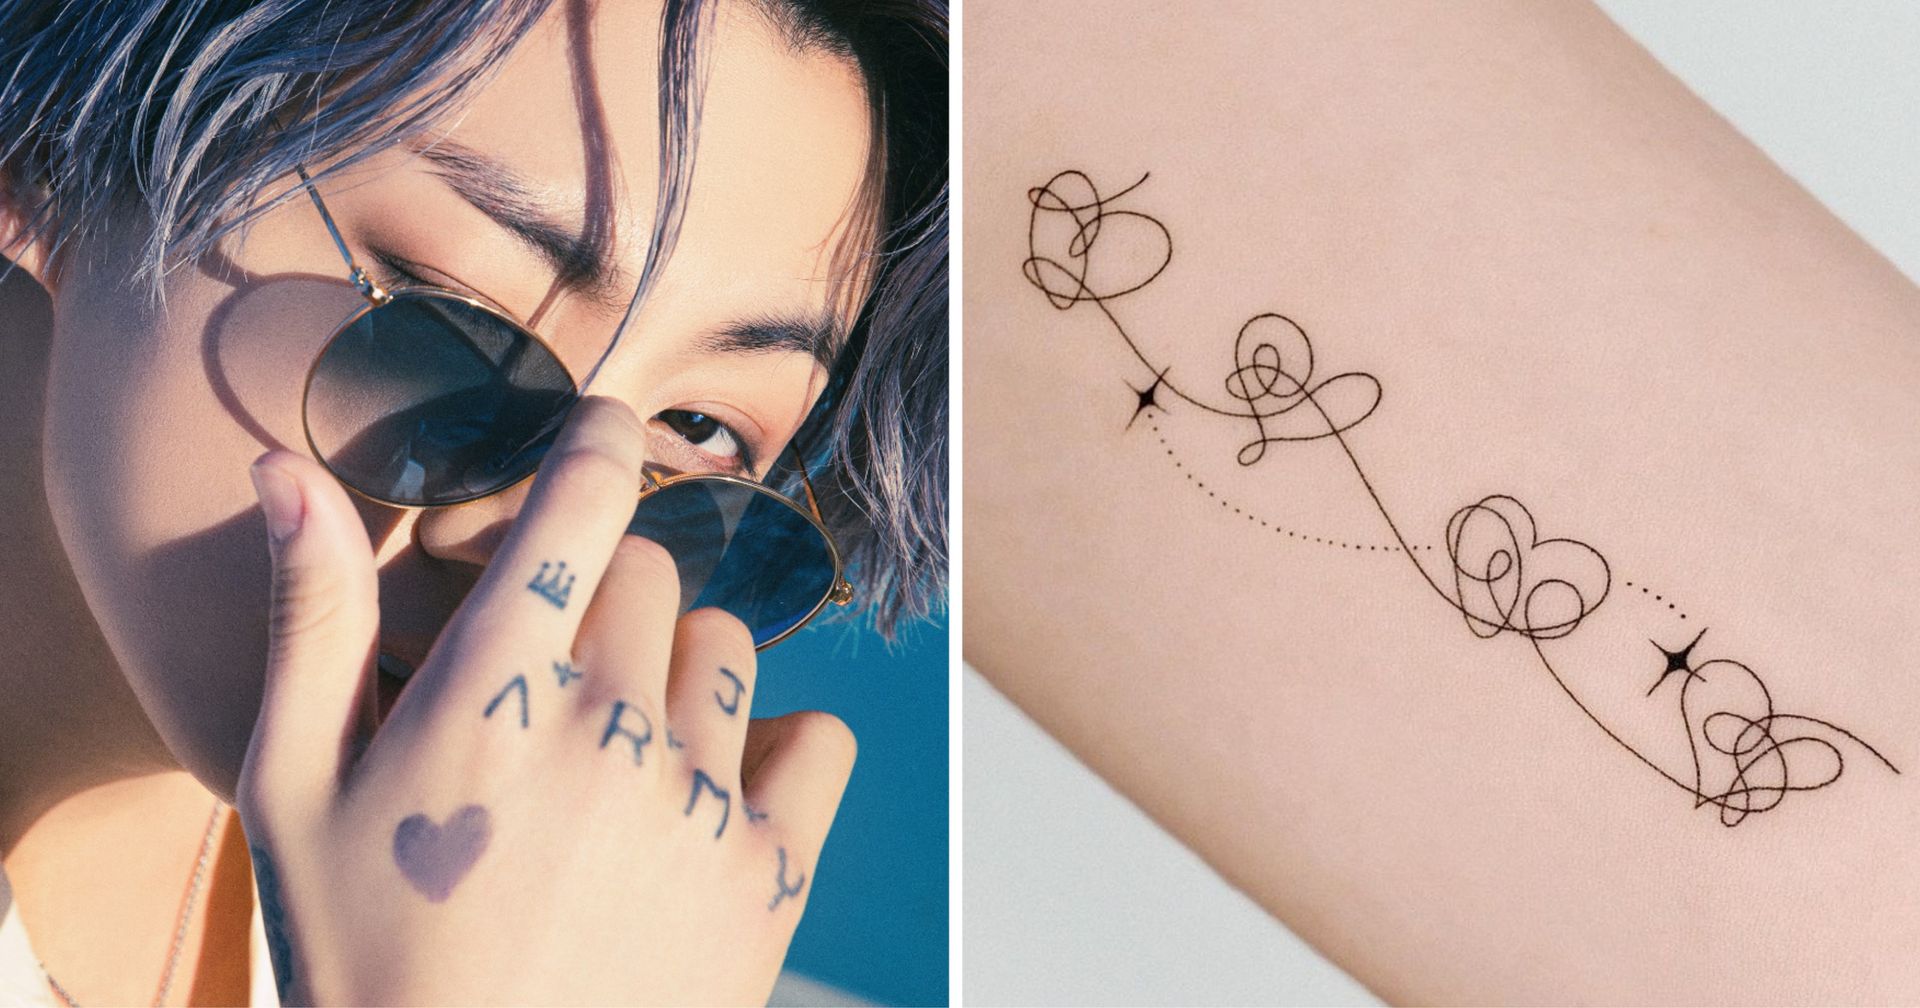 10 Minimalist Wrist Tattoo Ideas To Try